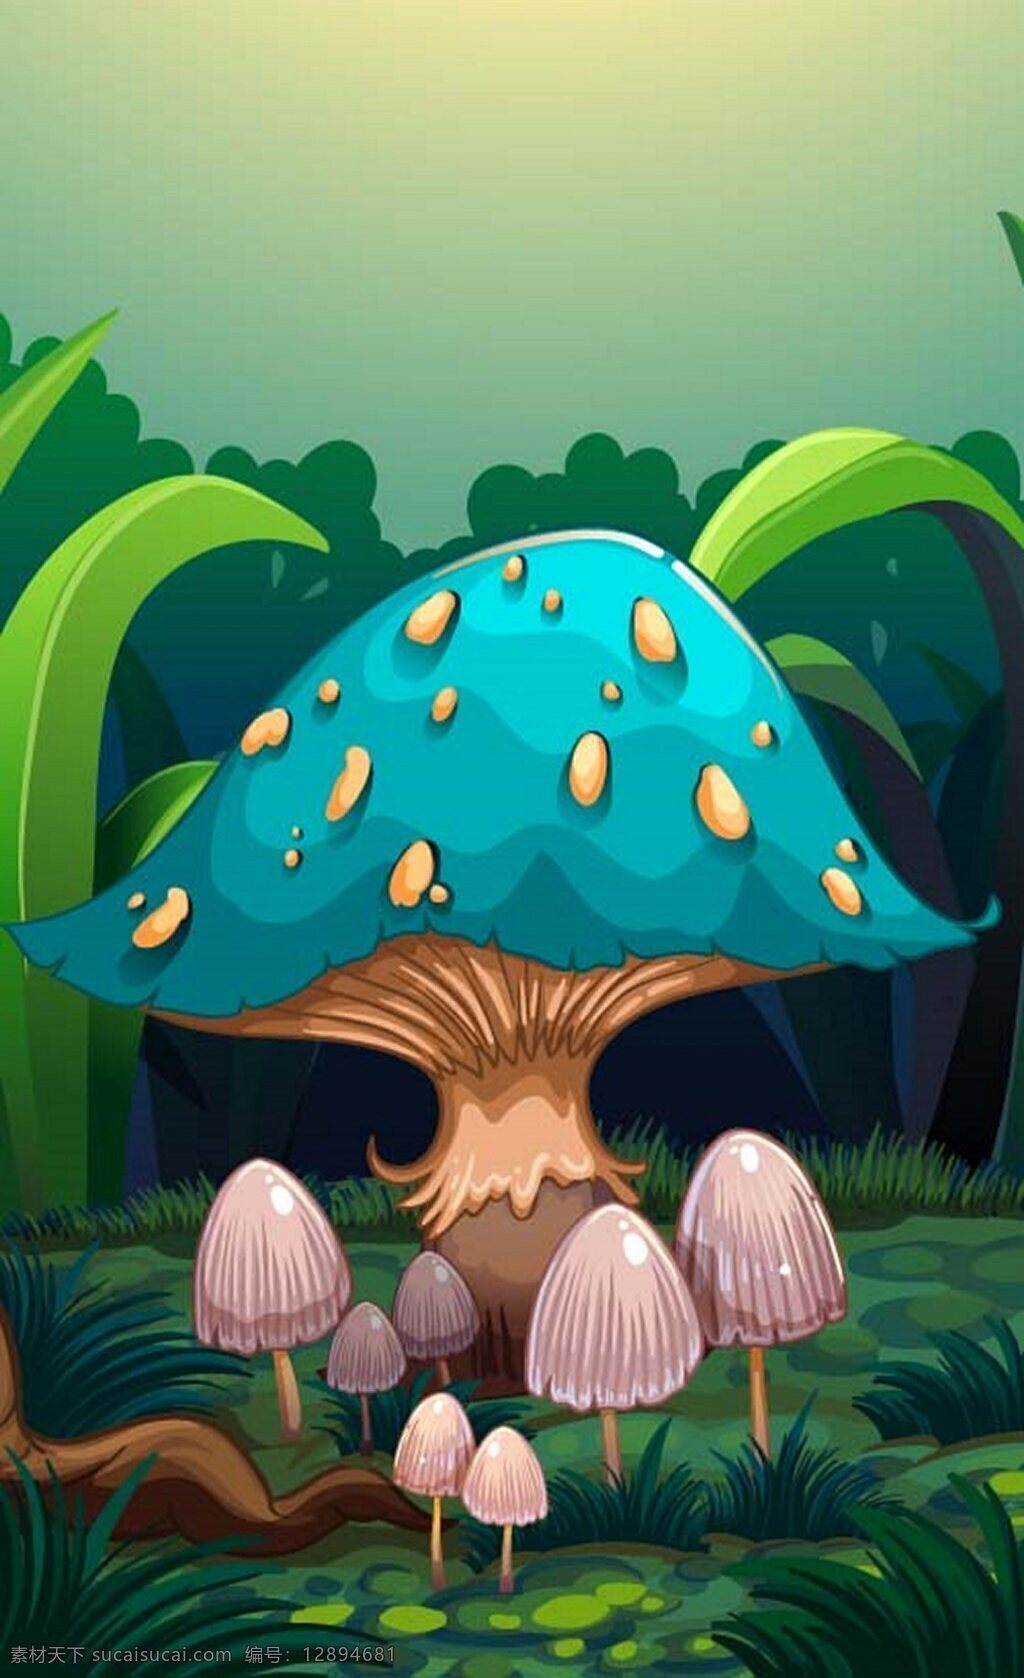 童话 世界 卡通 蘑菇 可爱 素材免费下载 矢量 插画 童话世界 蓝色 森林